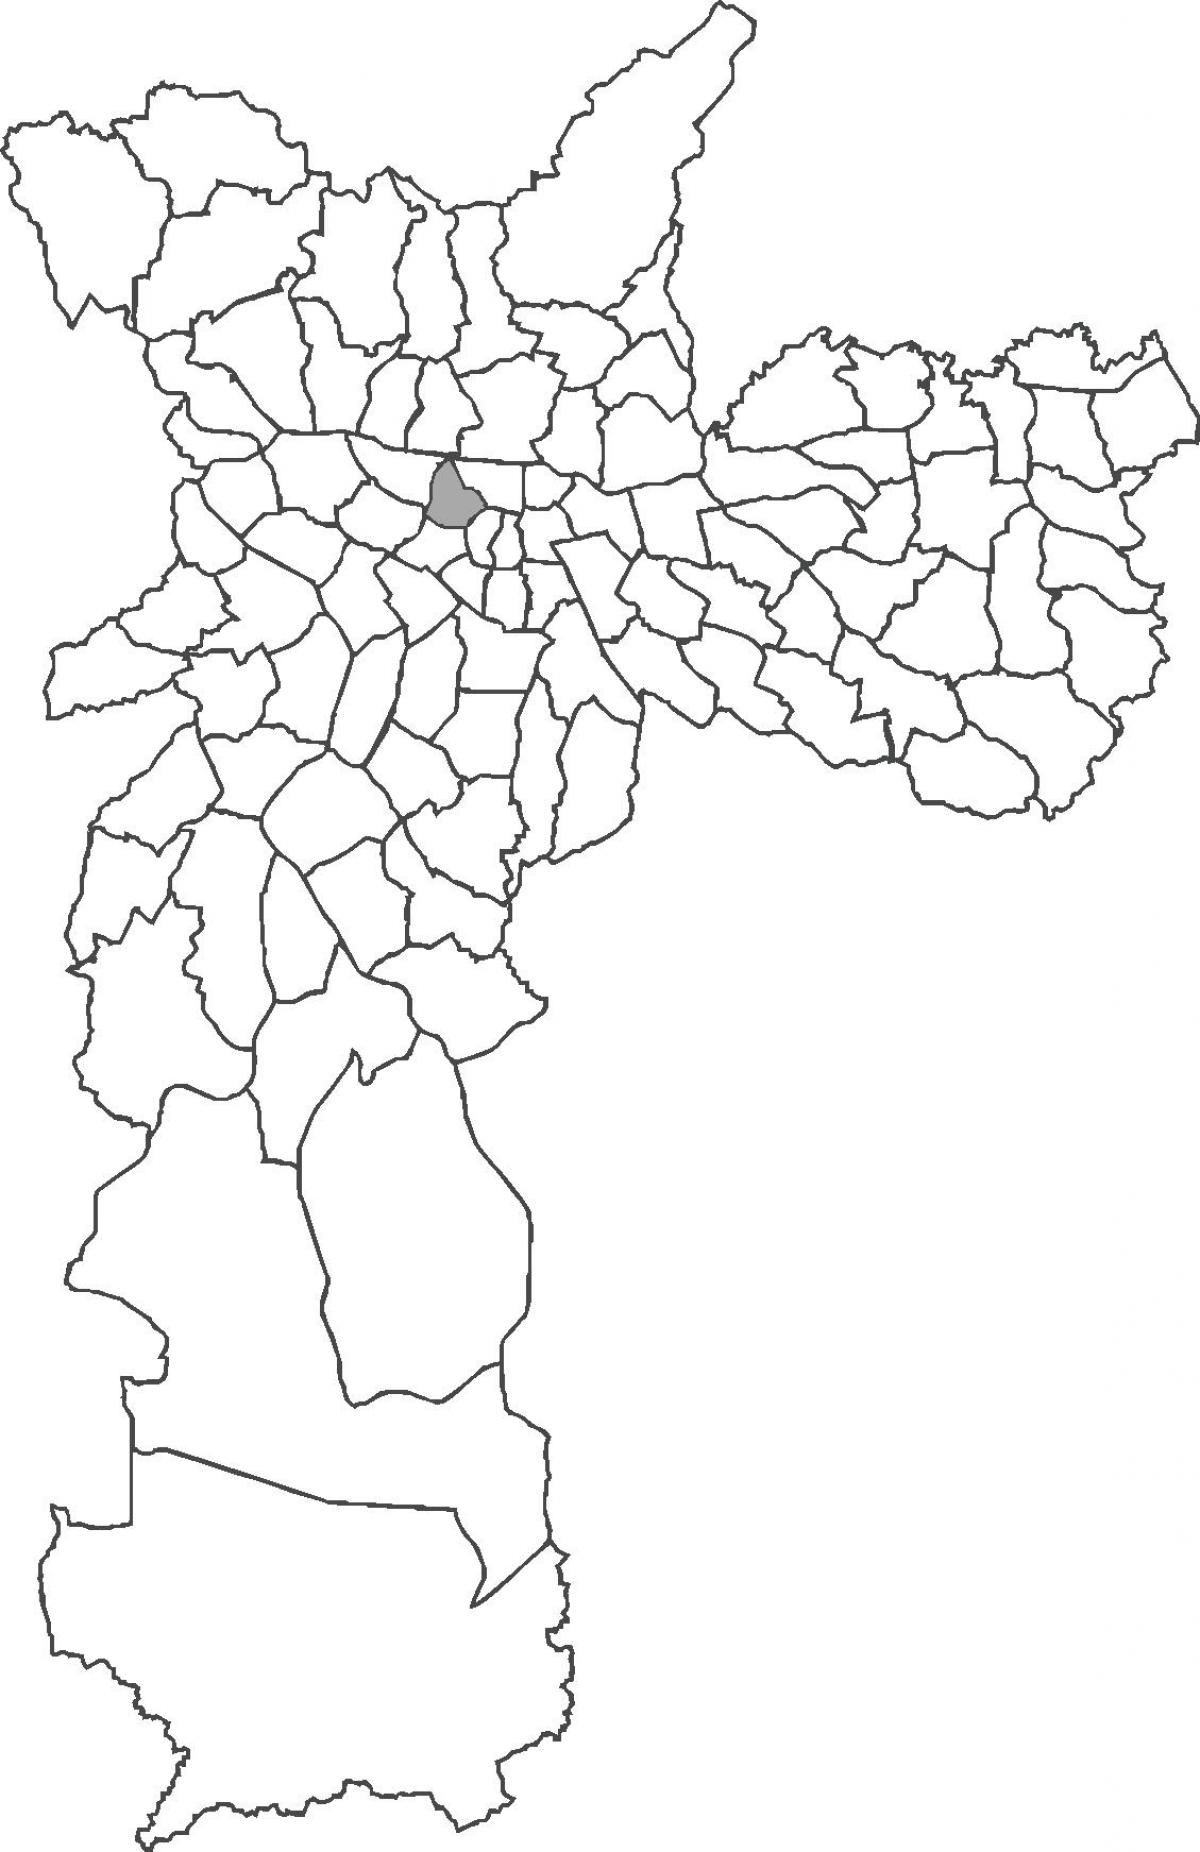 Santa Cecília bölge haritası